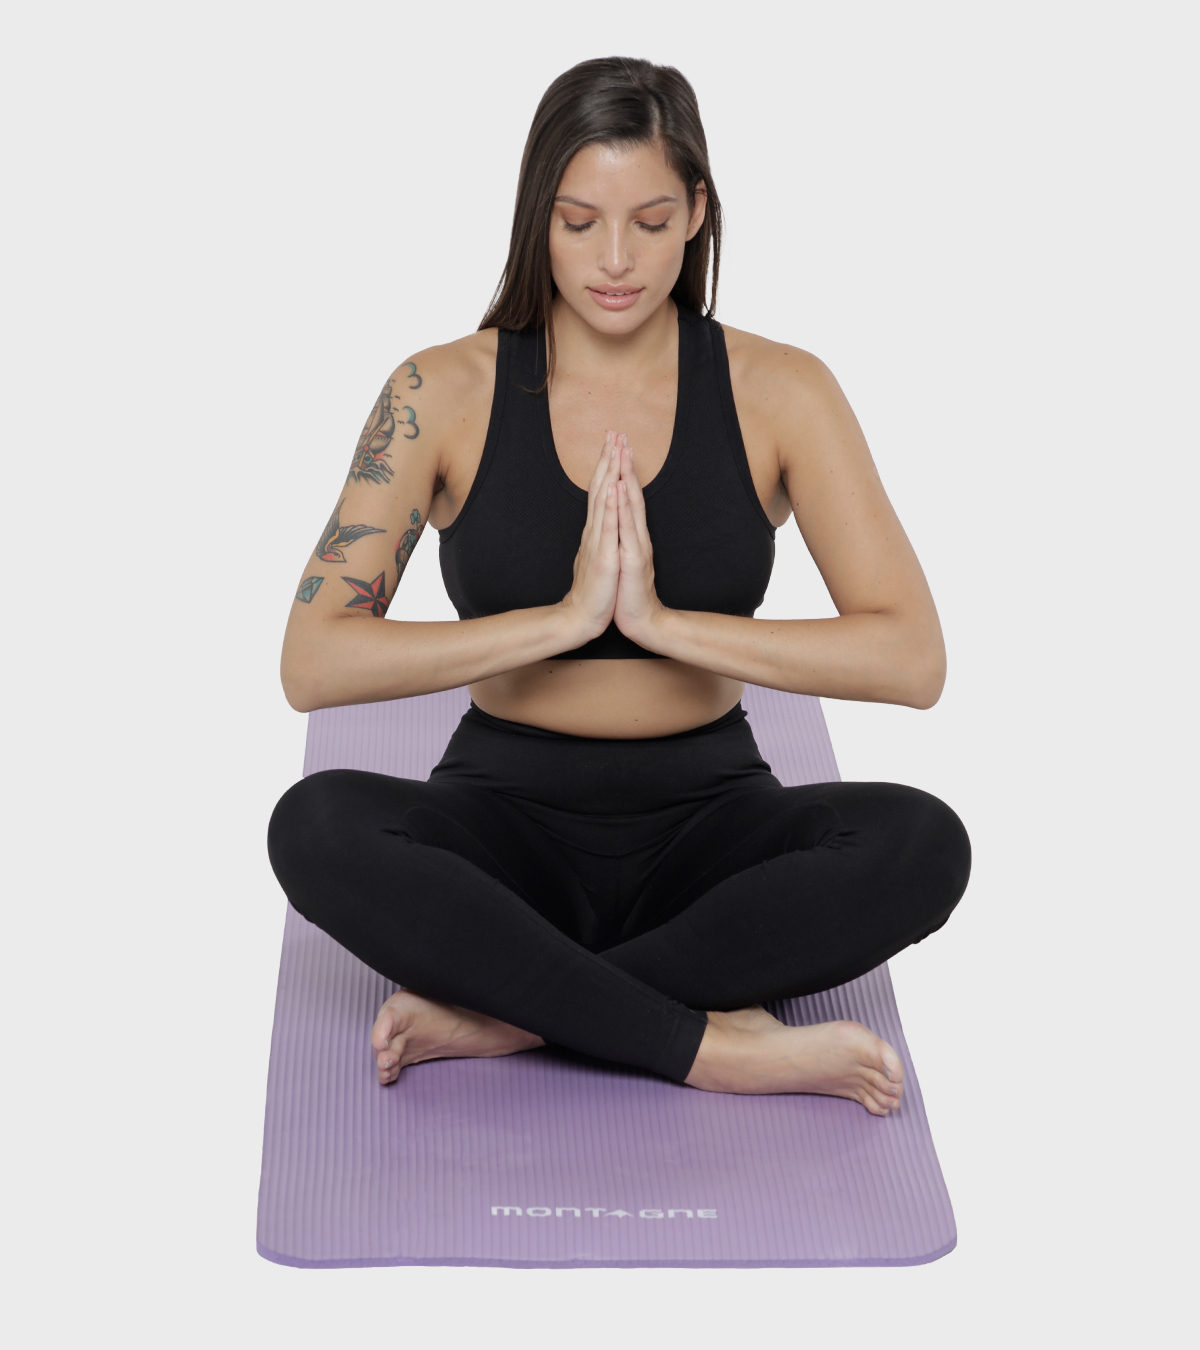 Mantas de yoga (mantas para yoga): venta online